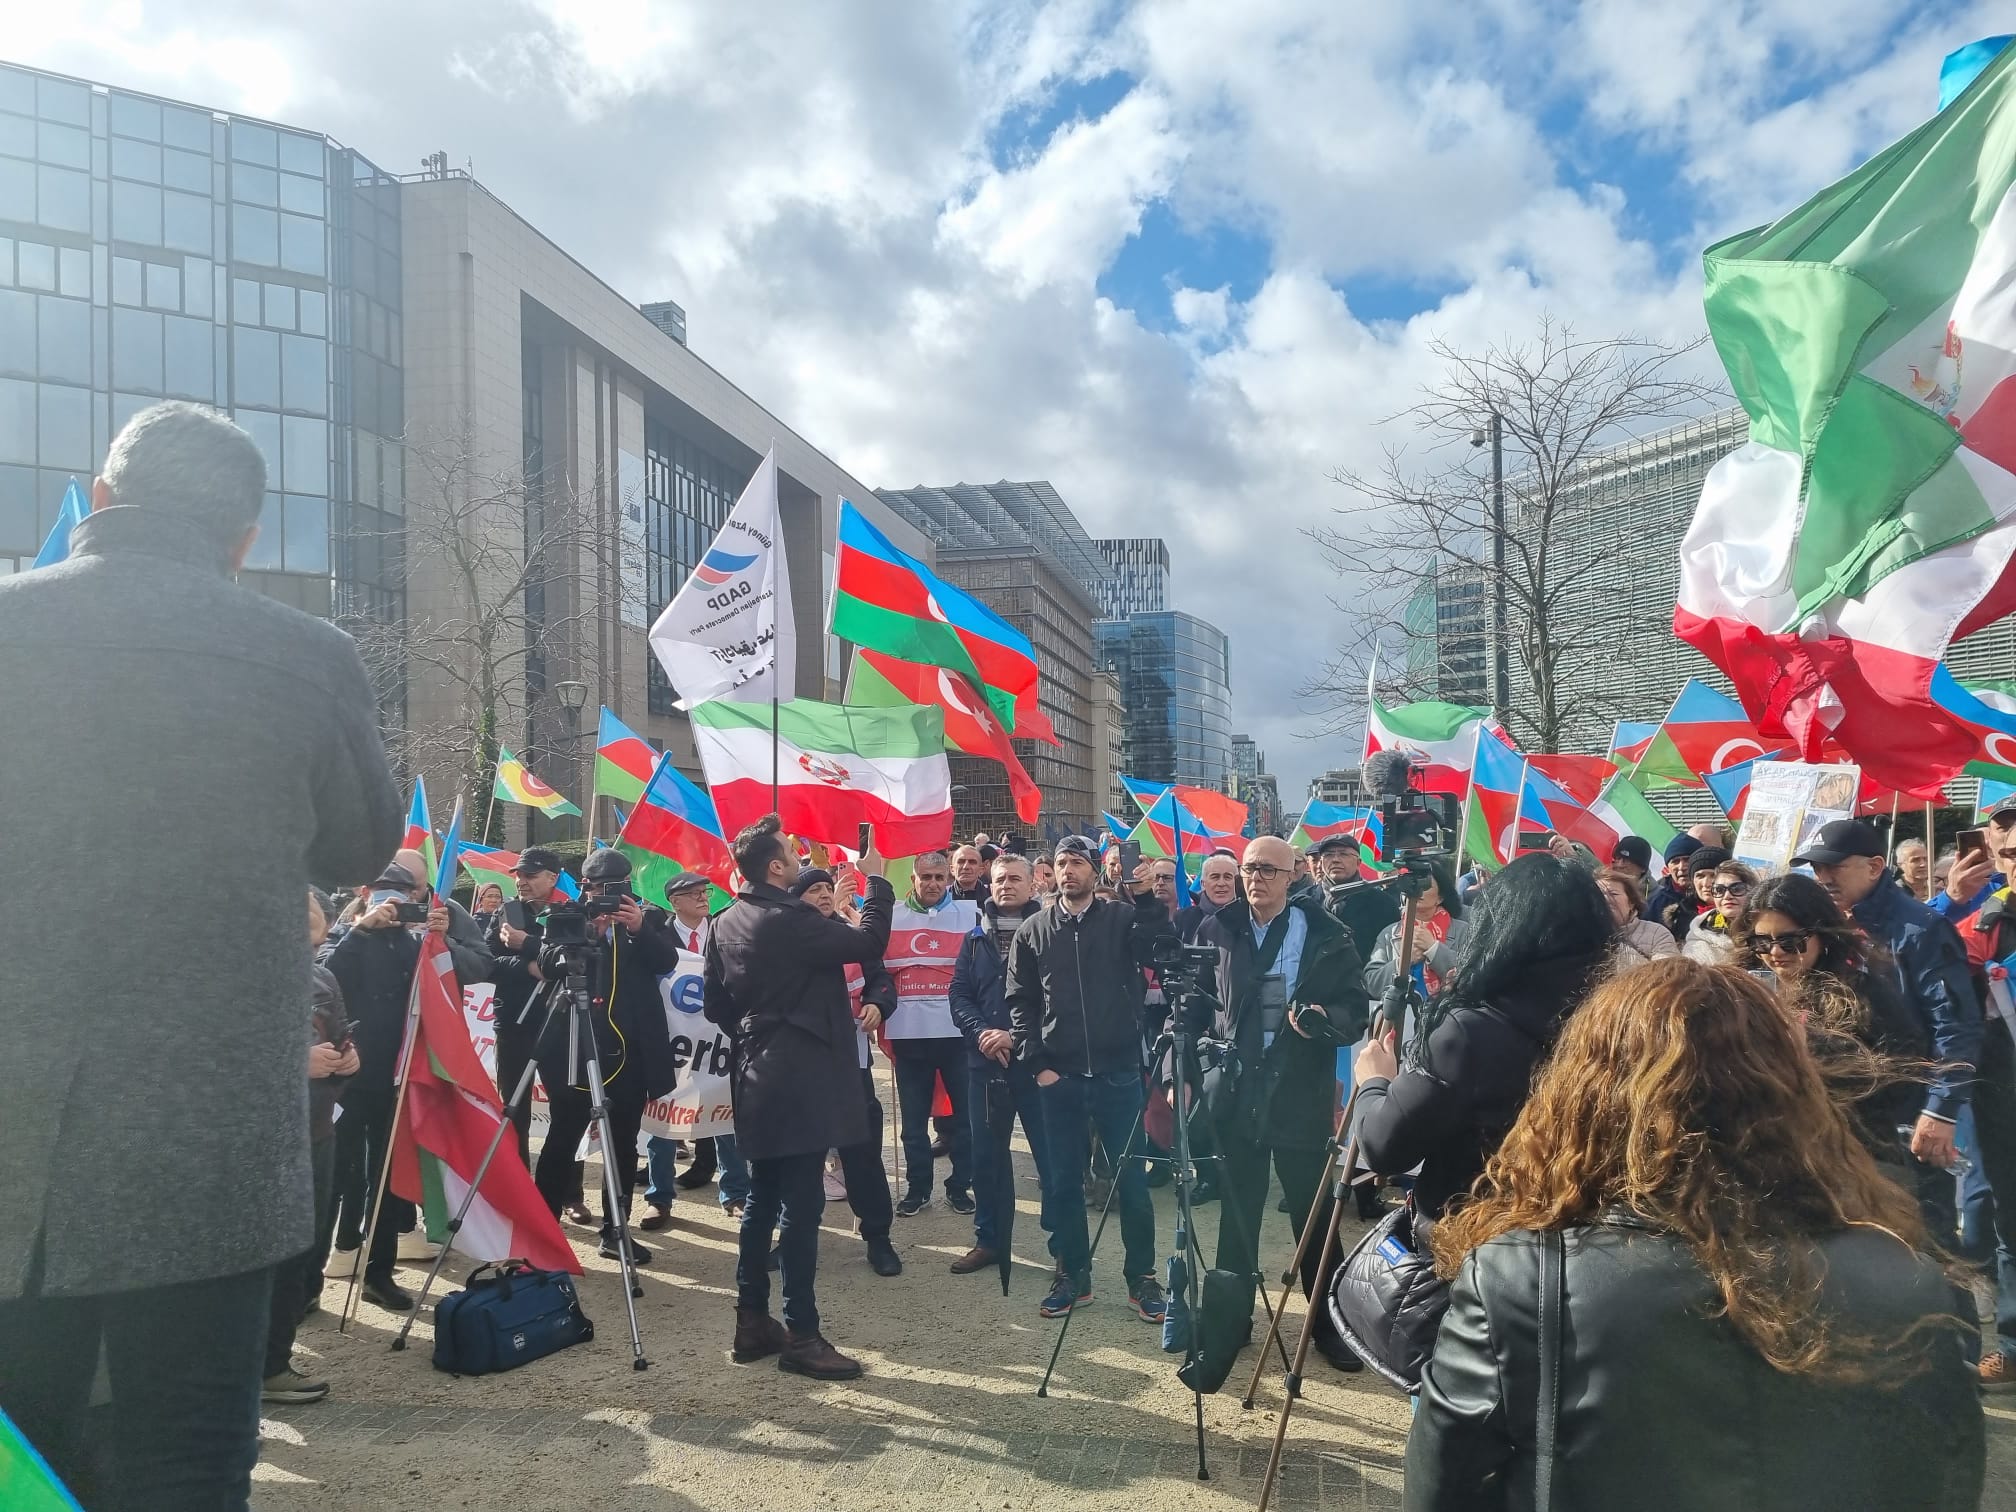 25 марта протестующие из азербайджанской общины Ирана собрались перед Европейским парламентом и институтами ЕС, чтобы продемонстрировать свою поддержку иранской революции, а также украинской диаспоре.